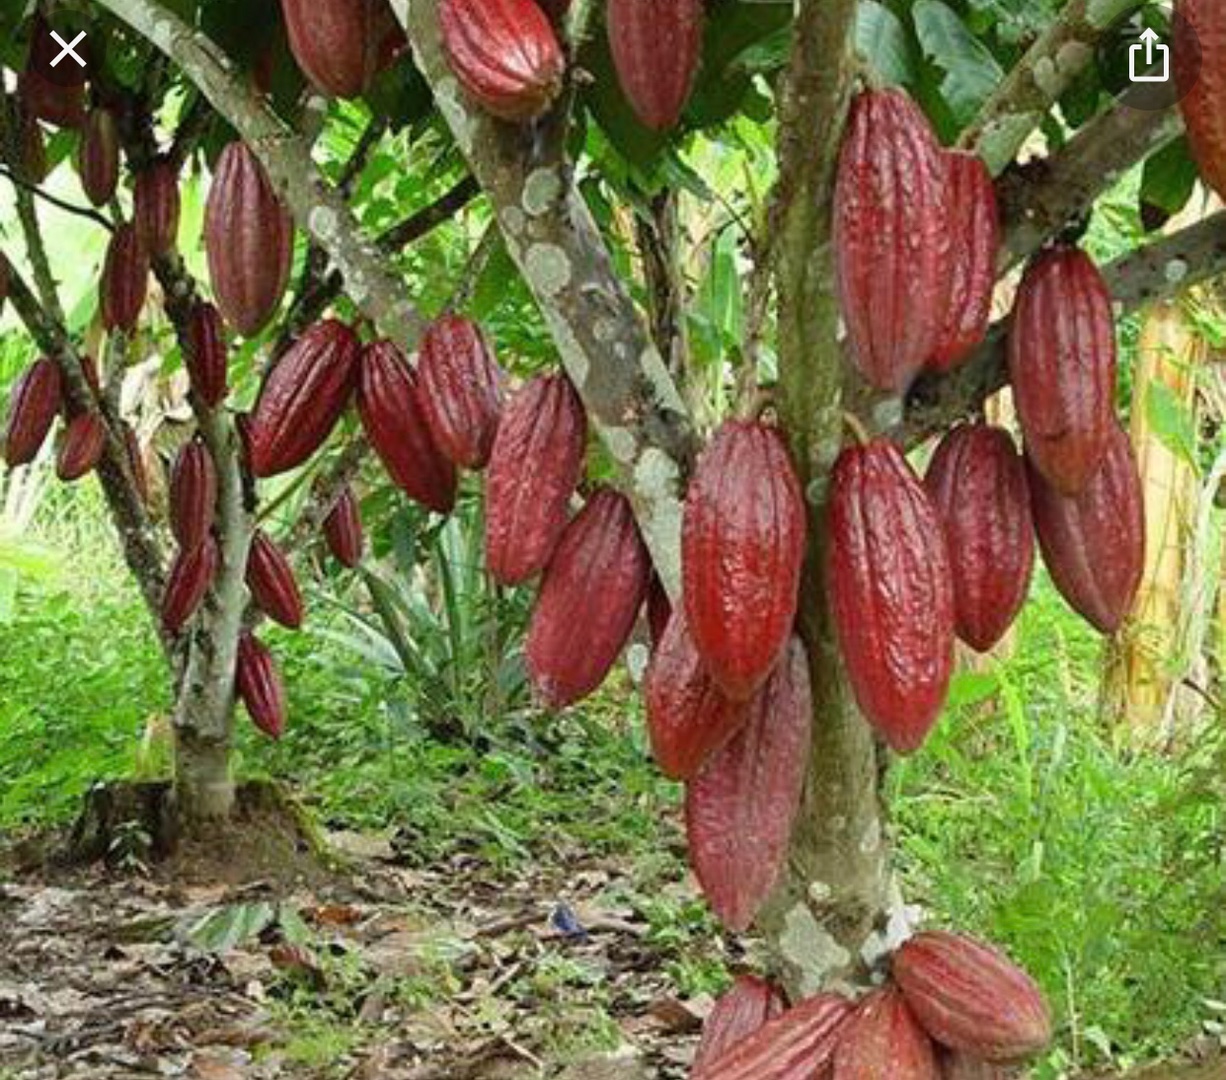 solares y terrenos - Vendo finca de cacao en producción  4